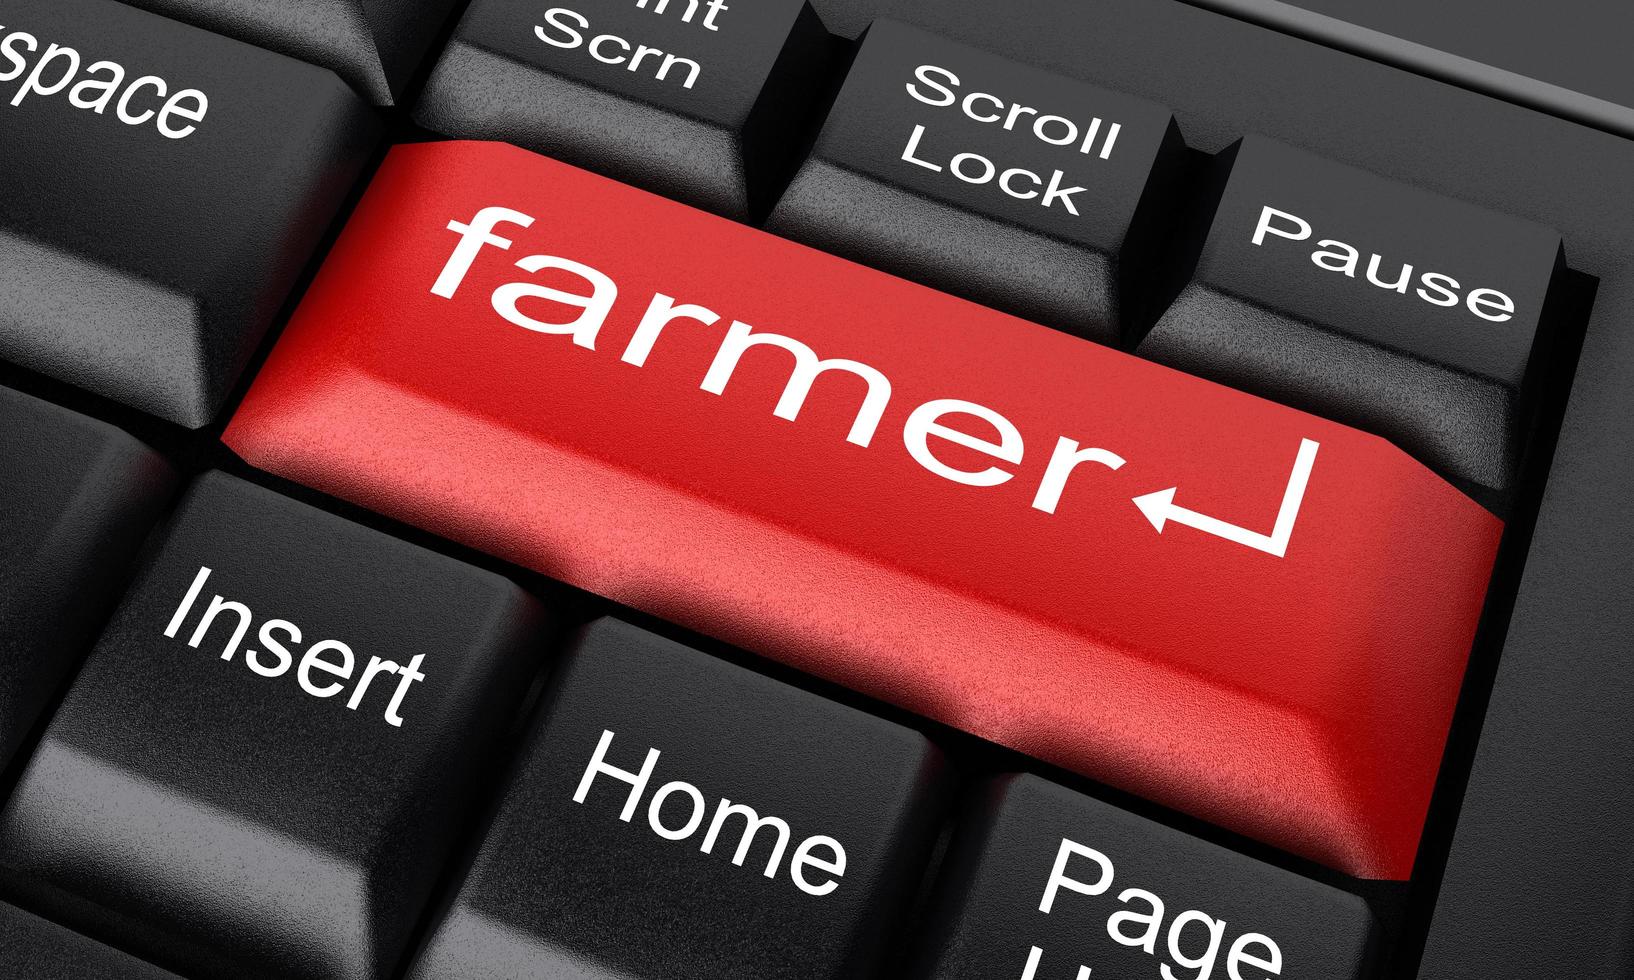 mot agriculteur sur le bouton clavier rouge photo